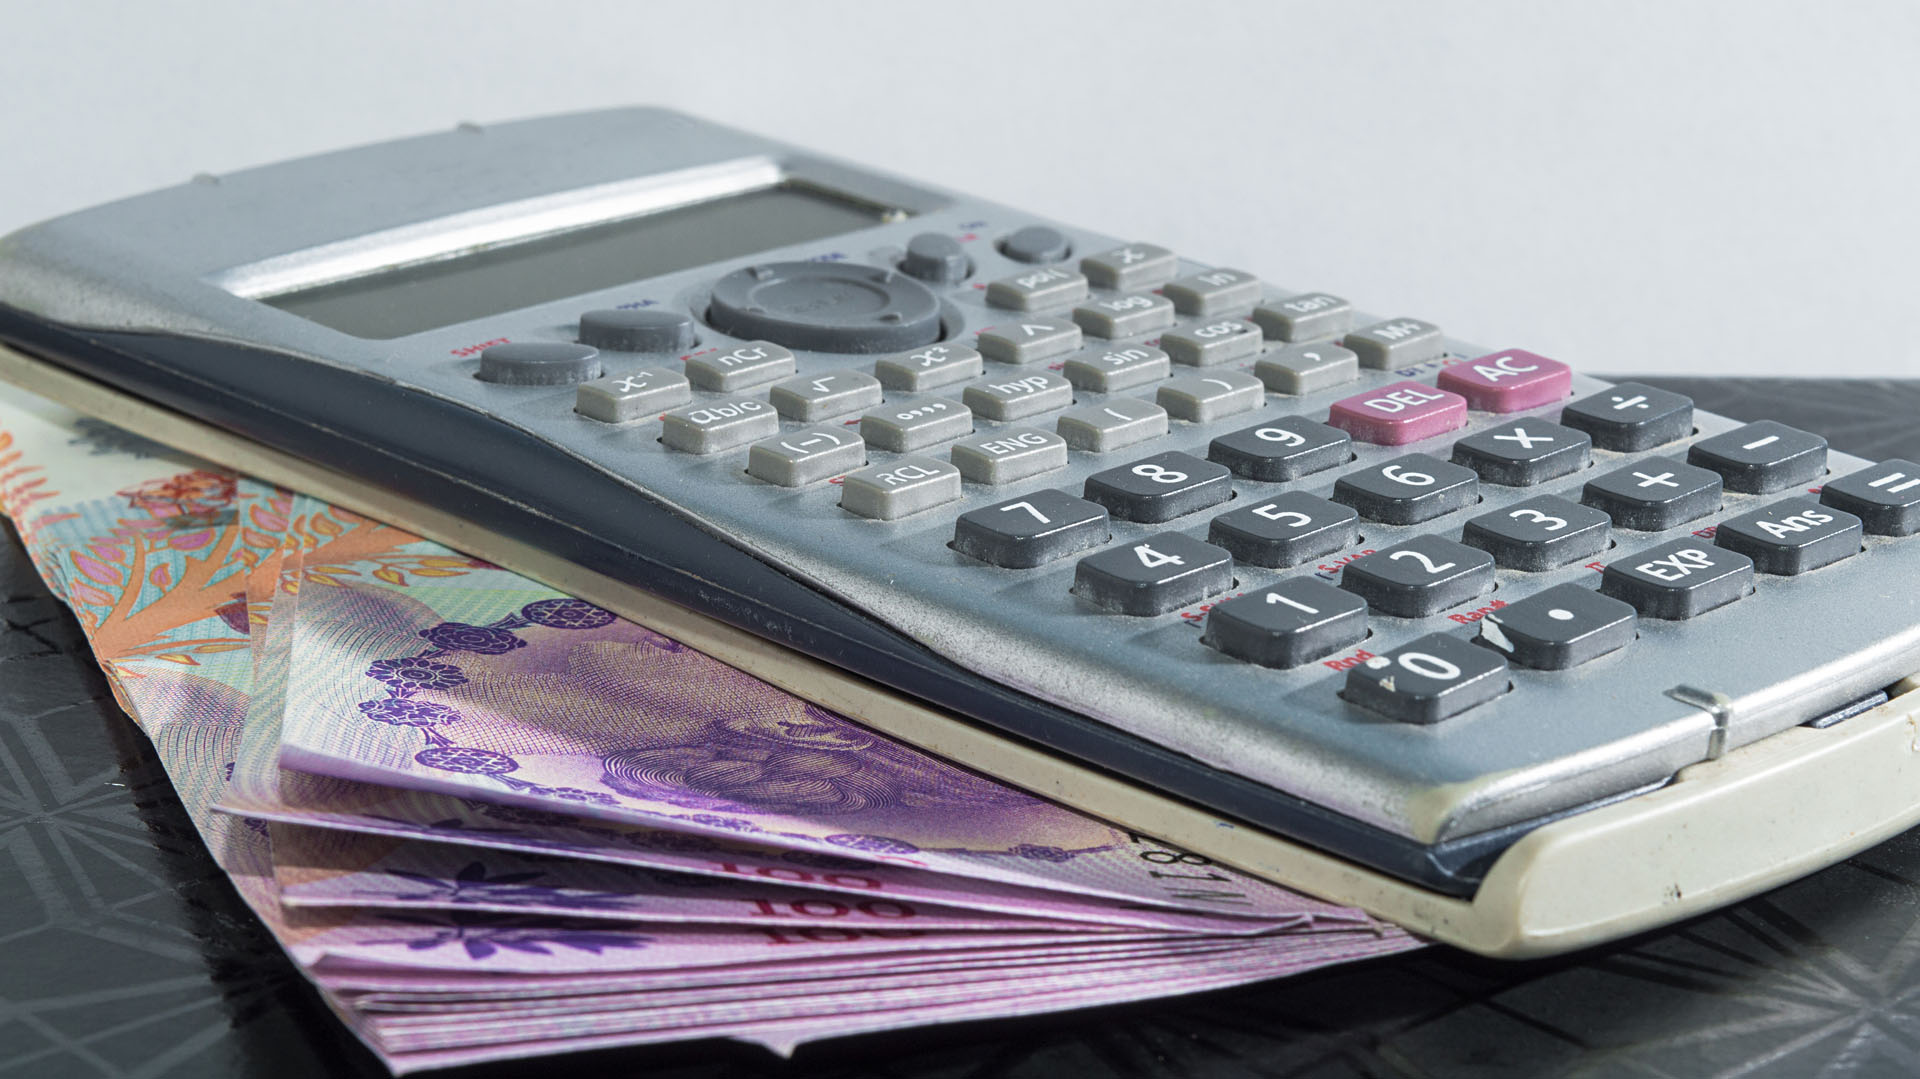 objeto de oficina, una calculadora un poco deteriorada por el uso, con unos billetes de cien pesos argentino